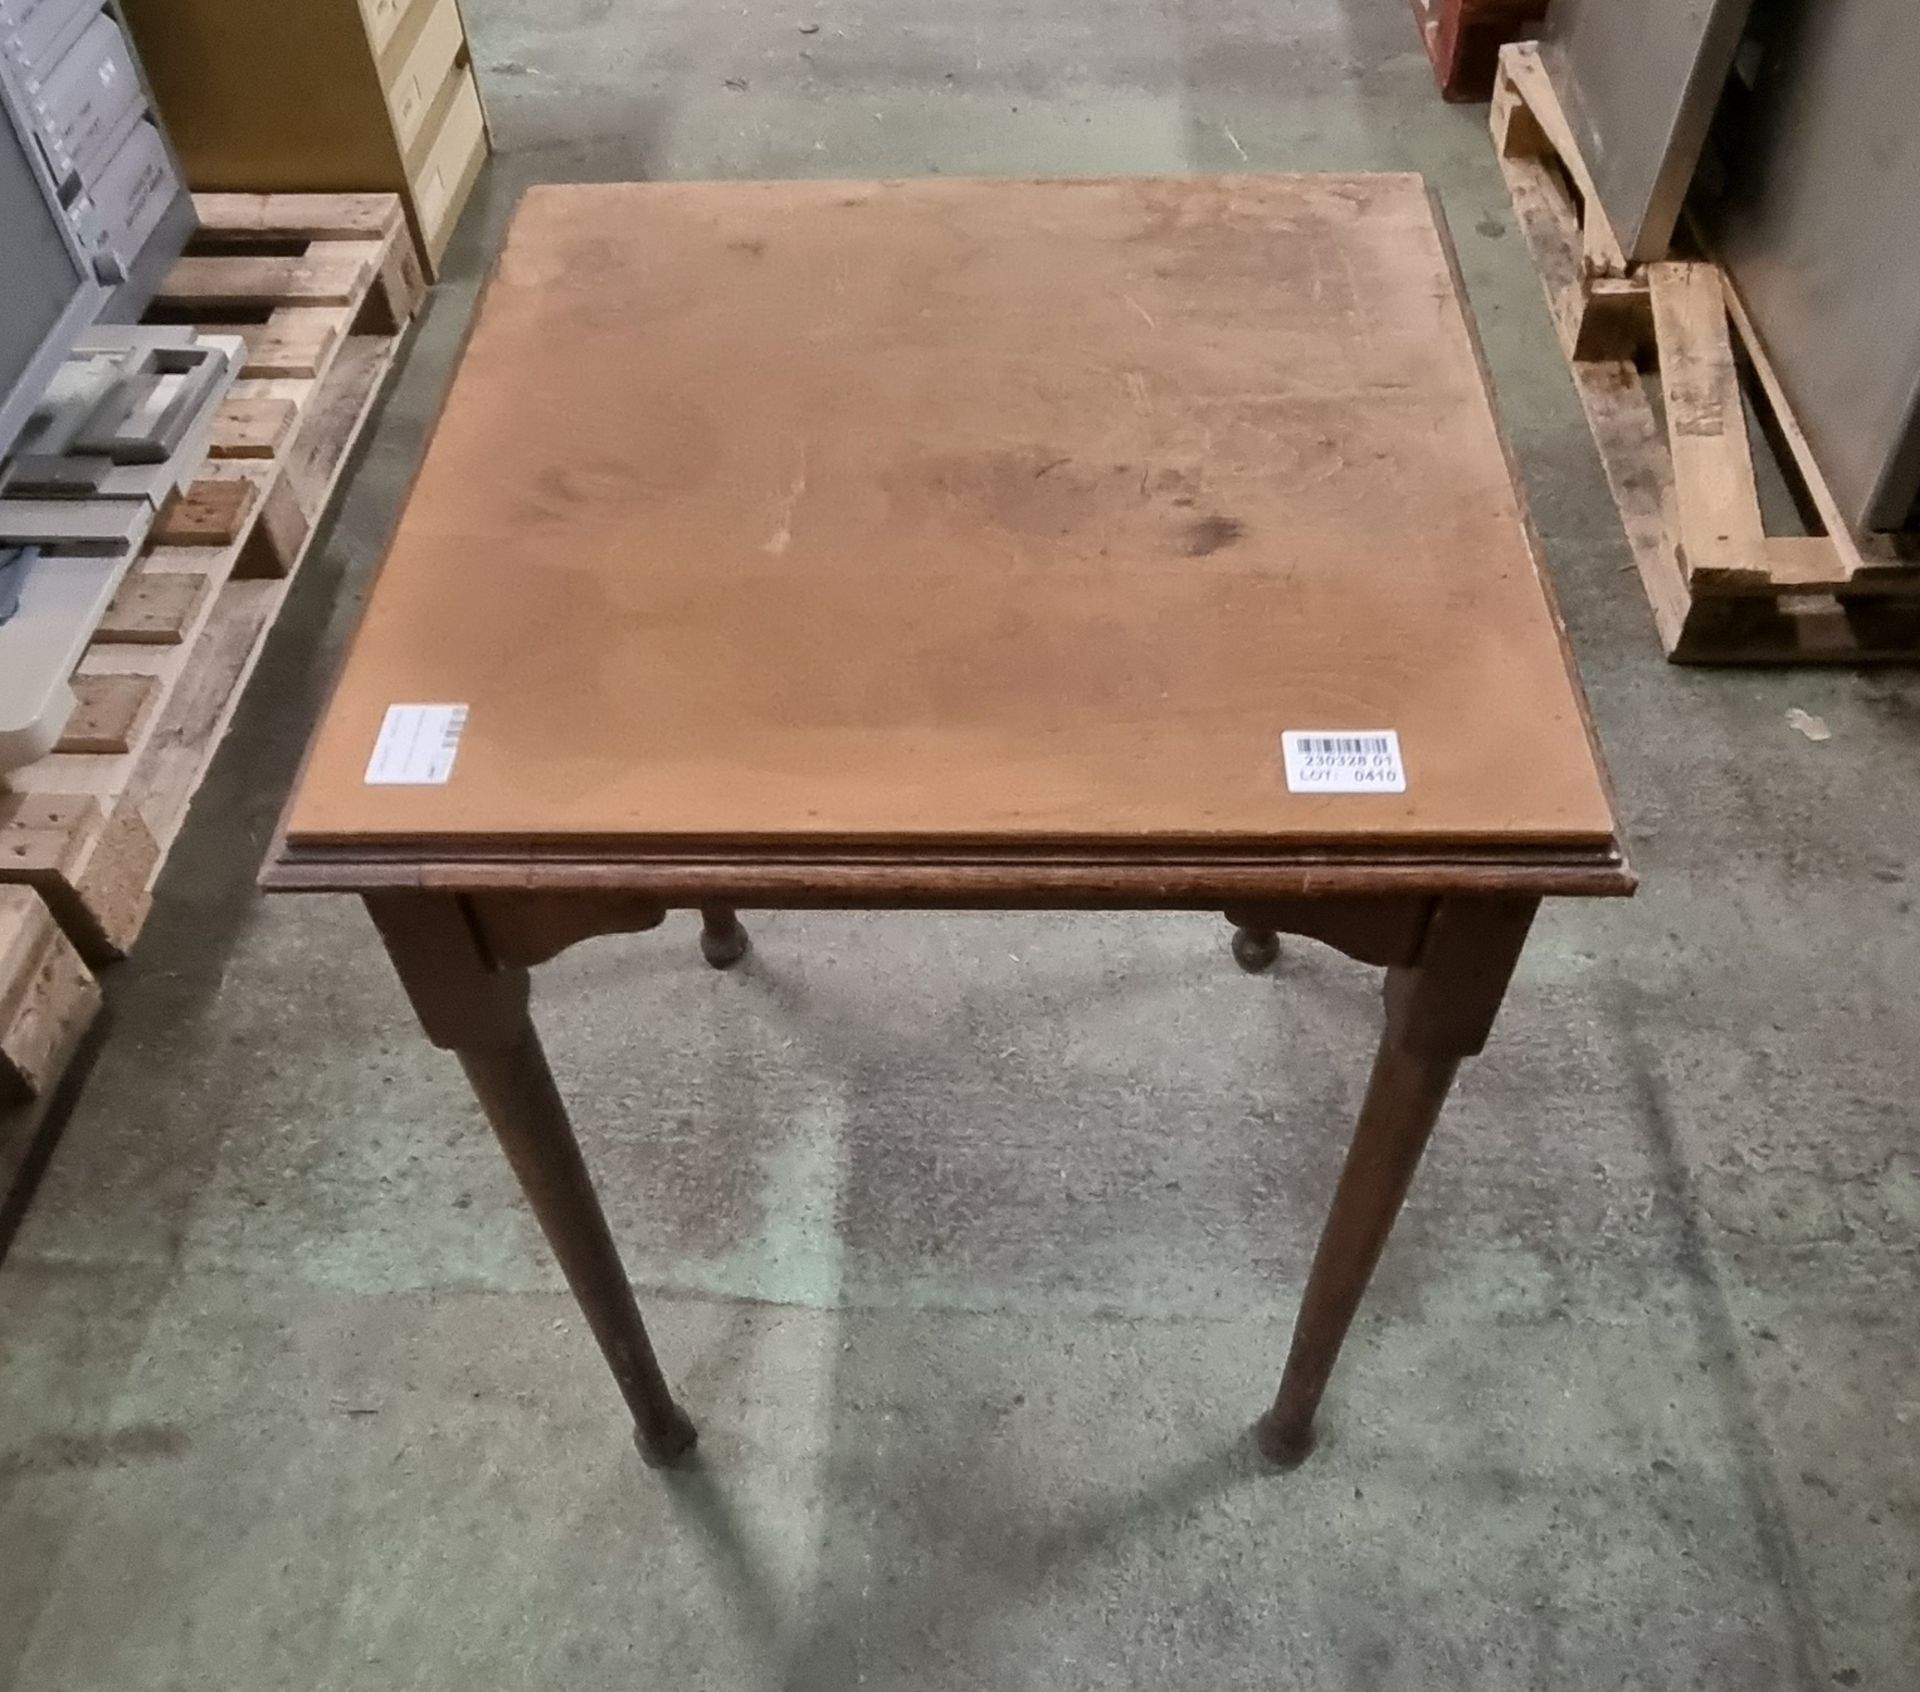 Wooden table - 61 x 61 x 74cm - Bild 2 aus 4